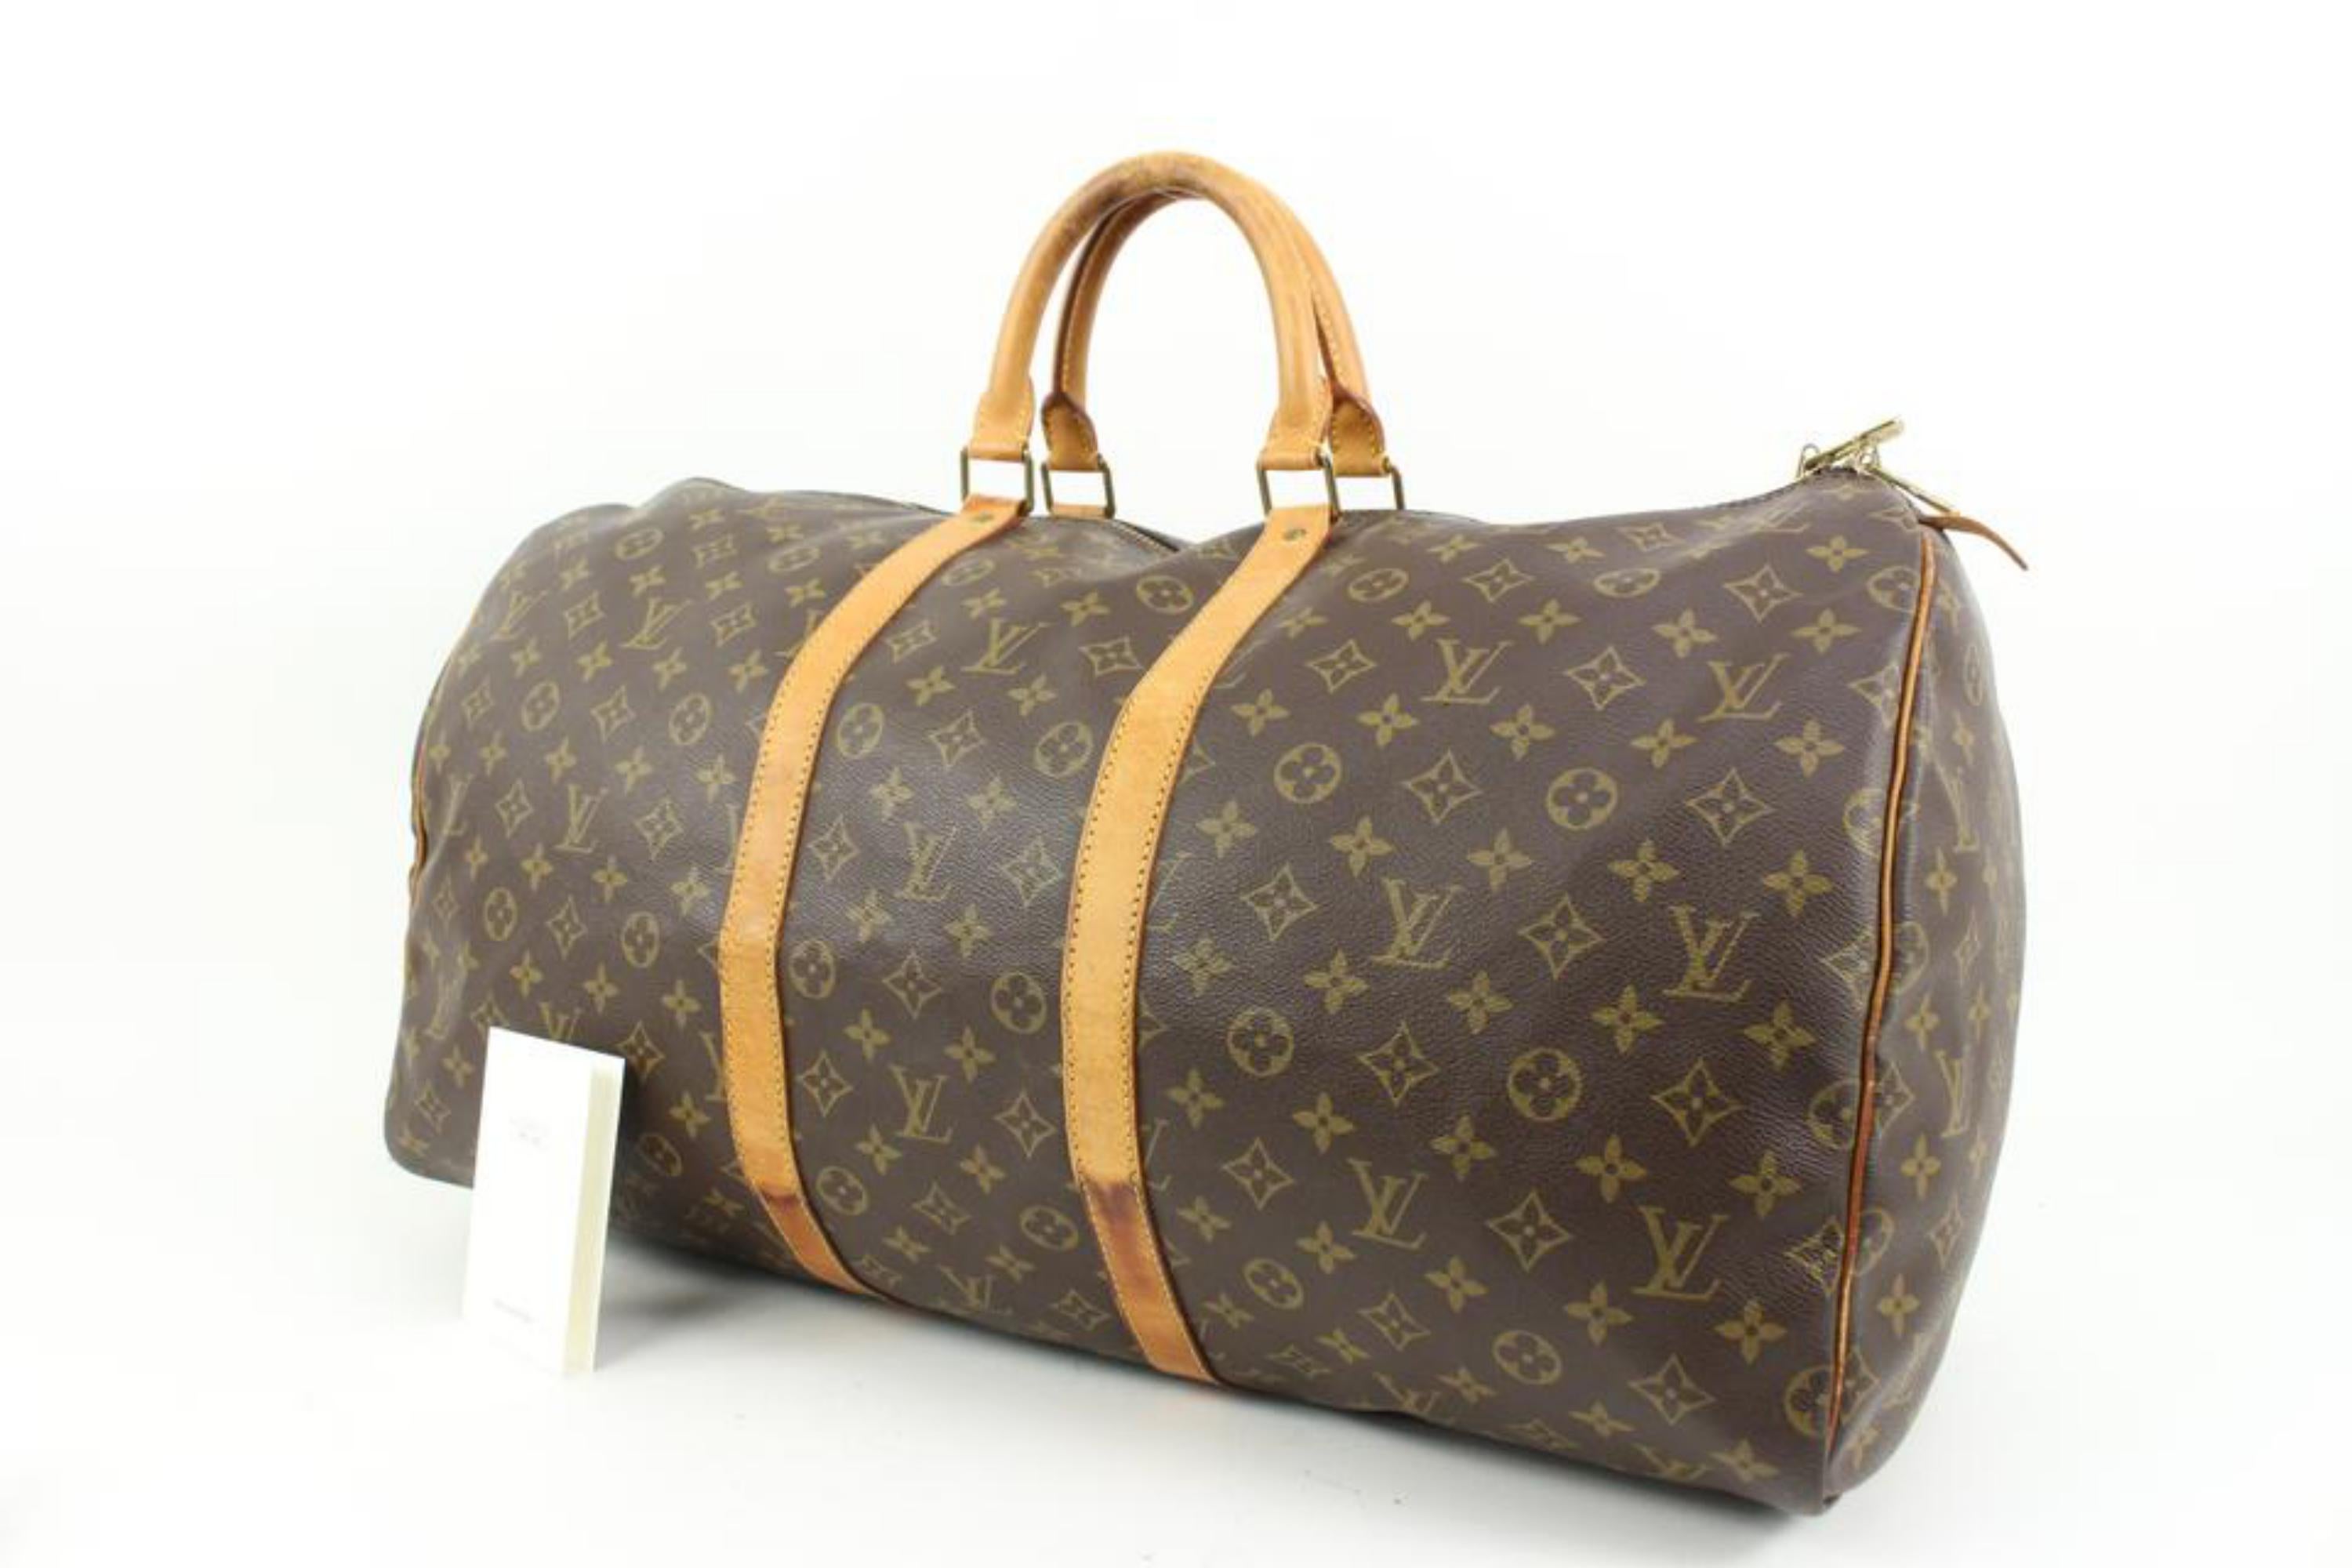 Louis Vuitton - Grand Monogramme Keepall 55 Boston Duffle Bag 36lz420s
Code de date/Numéro de série : VI1913
Fabriqué en : France
Mesures : Longueur :  21.5